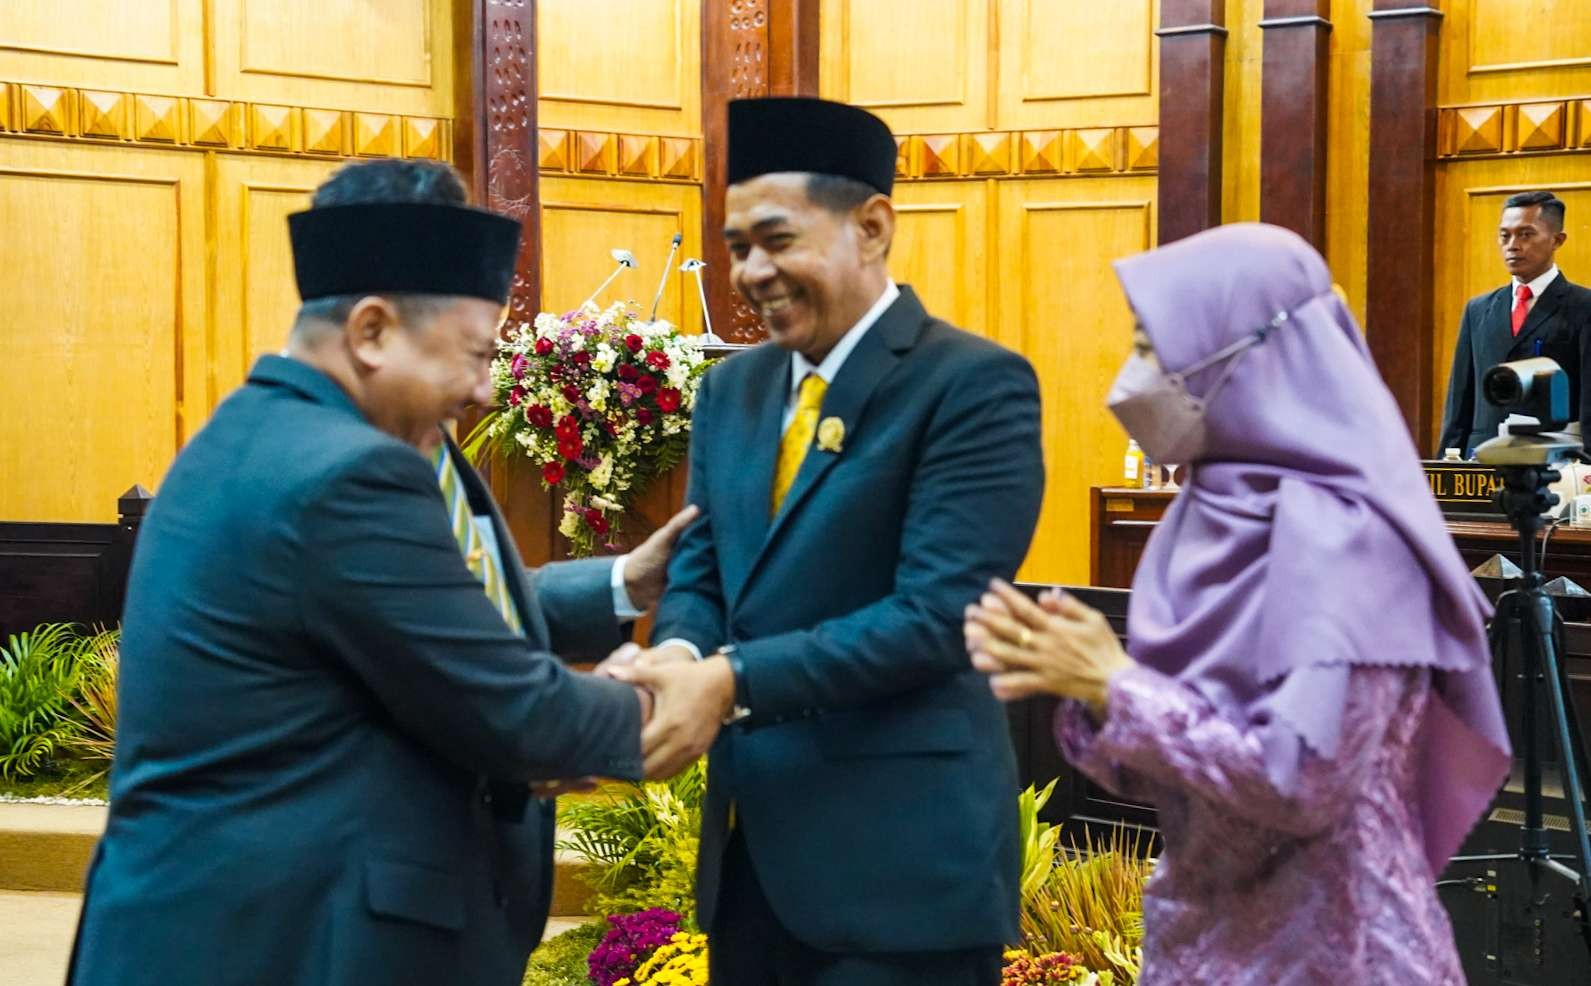 Thoriqul Huda usai dilantik jadi anggota DPRD mendapat ucapan selamat dari rekannya. (Foto: Aini Arifin/Ngopibareng.id)